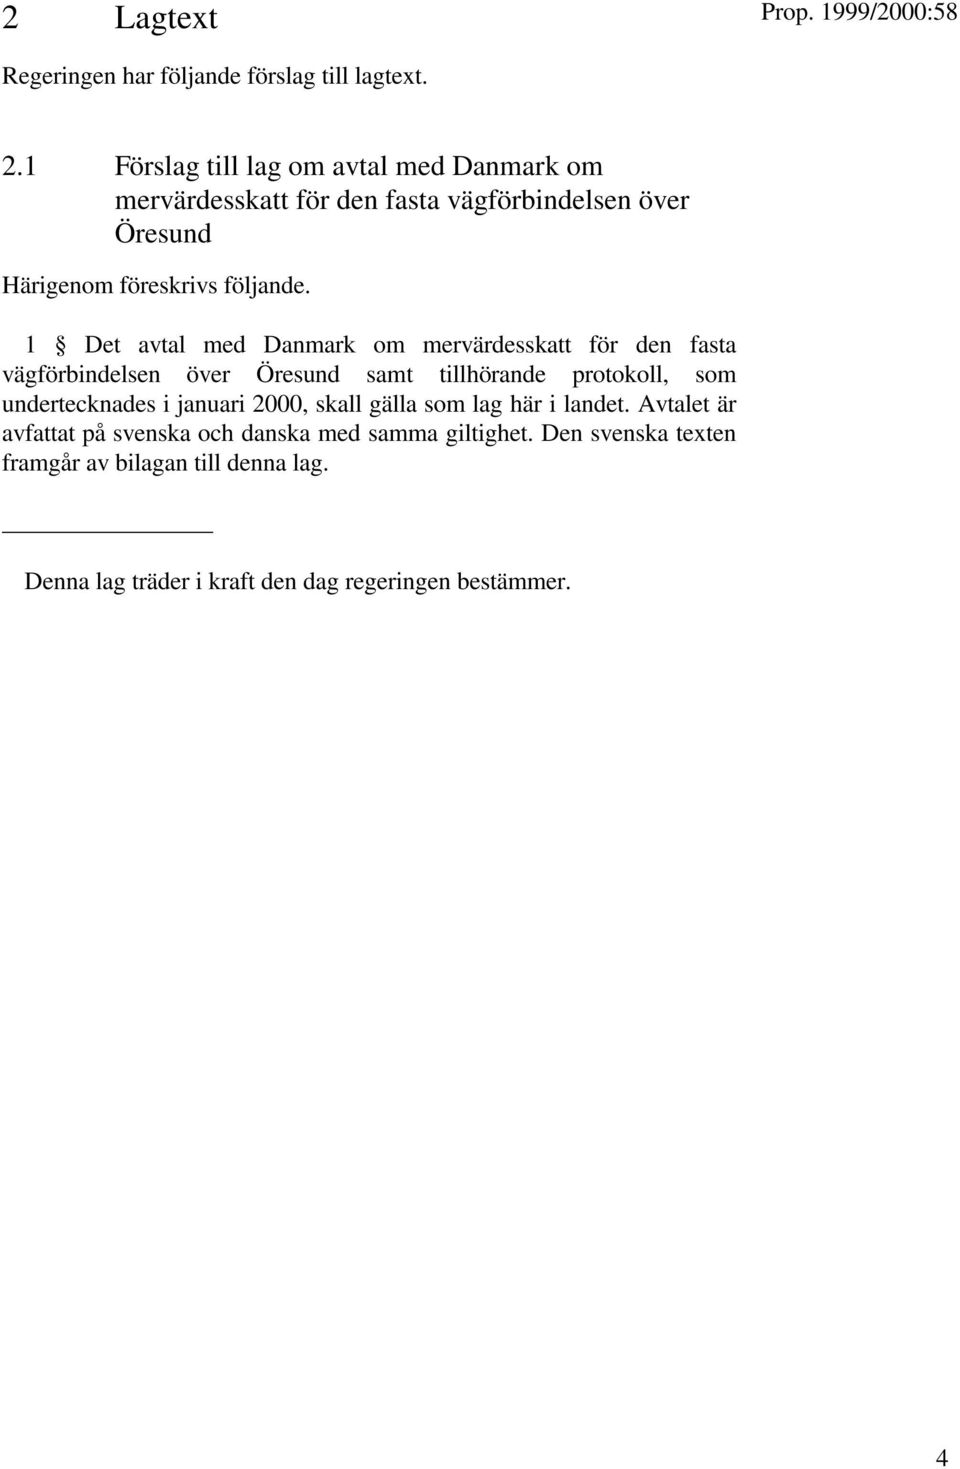 1 Det avtal med Danmark om mervärdesskatt för den fasta vägförbindelsen över Öresund samt tillhörande protokoll, som undertecknades i